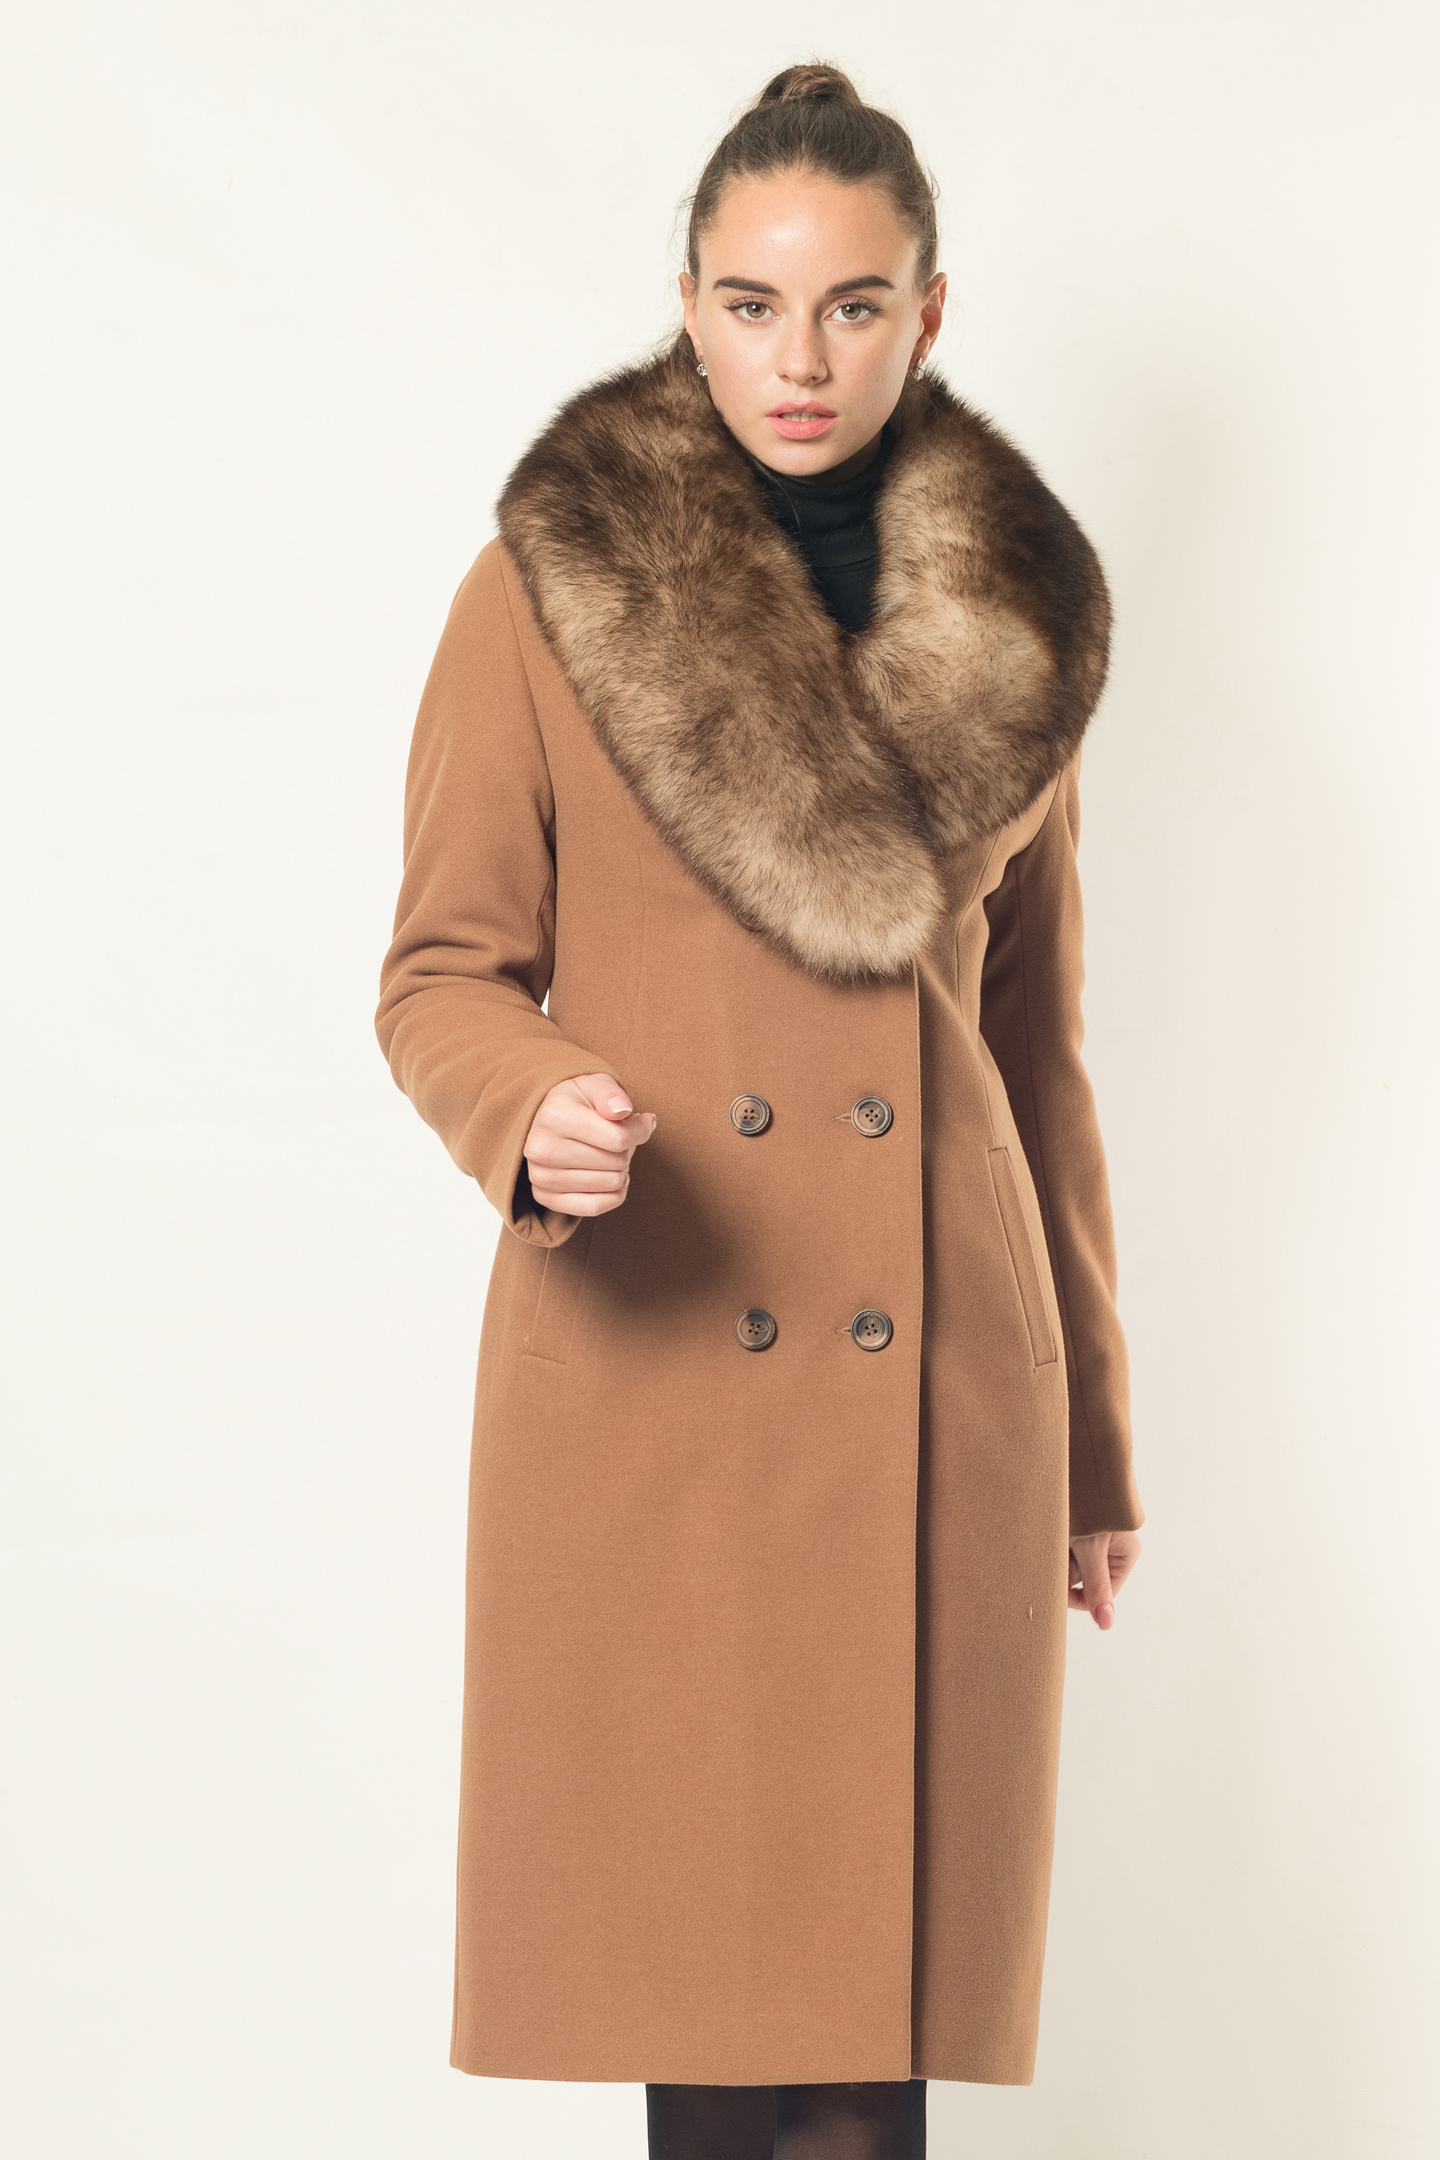 Женское зимнее пальто, Пальто приталенное, Артикул - 347z dublin кемел: купить онлайн.